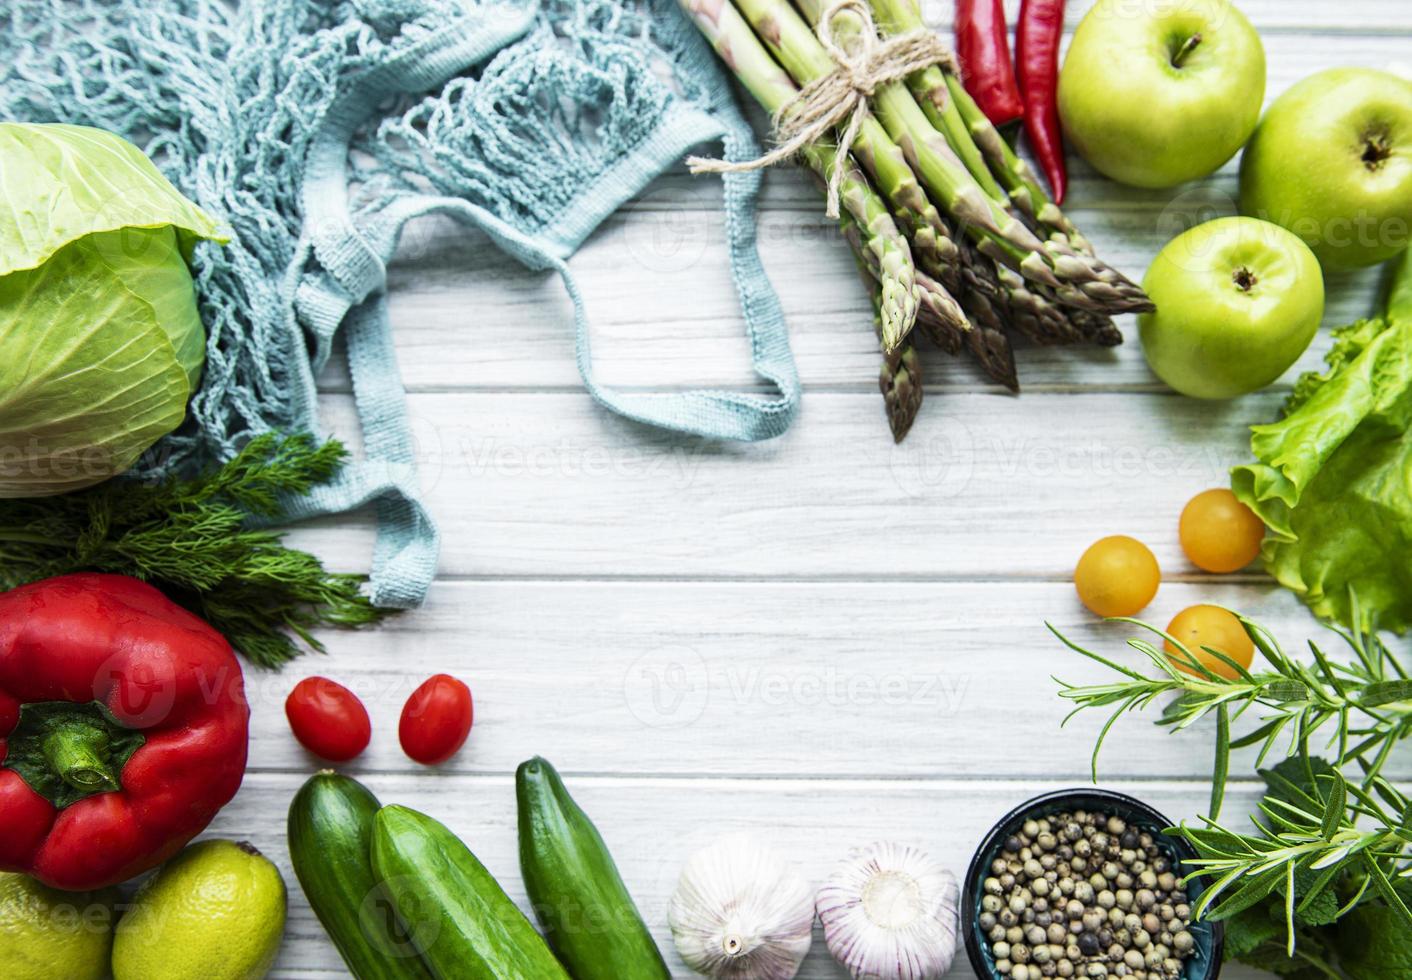 légumes et fruits frais avec un sac à cordes photo